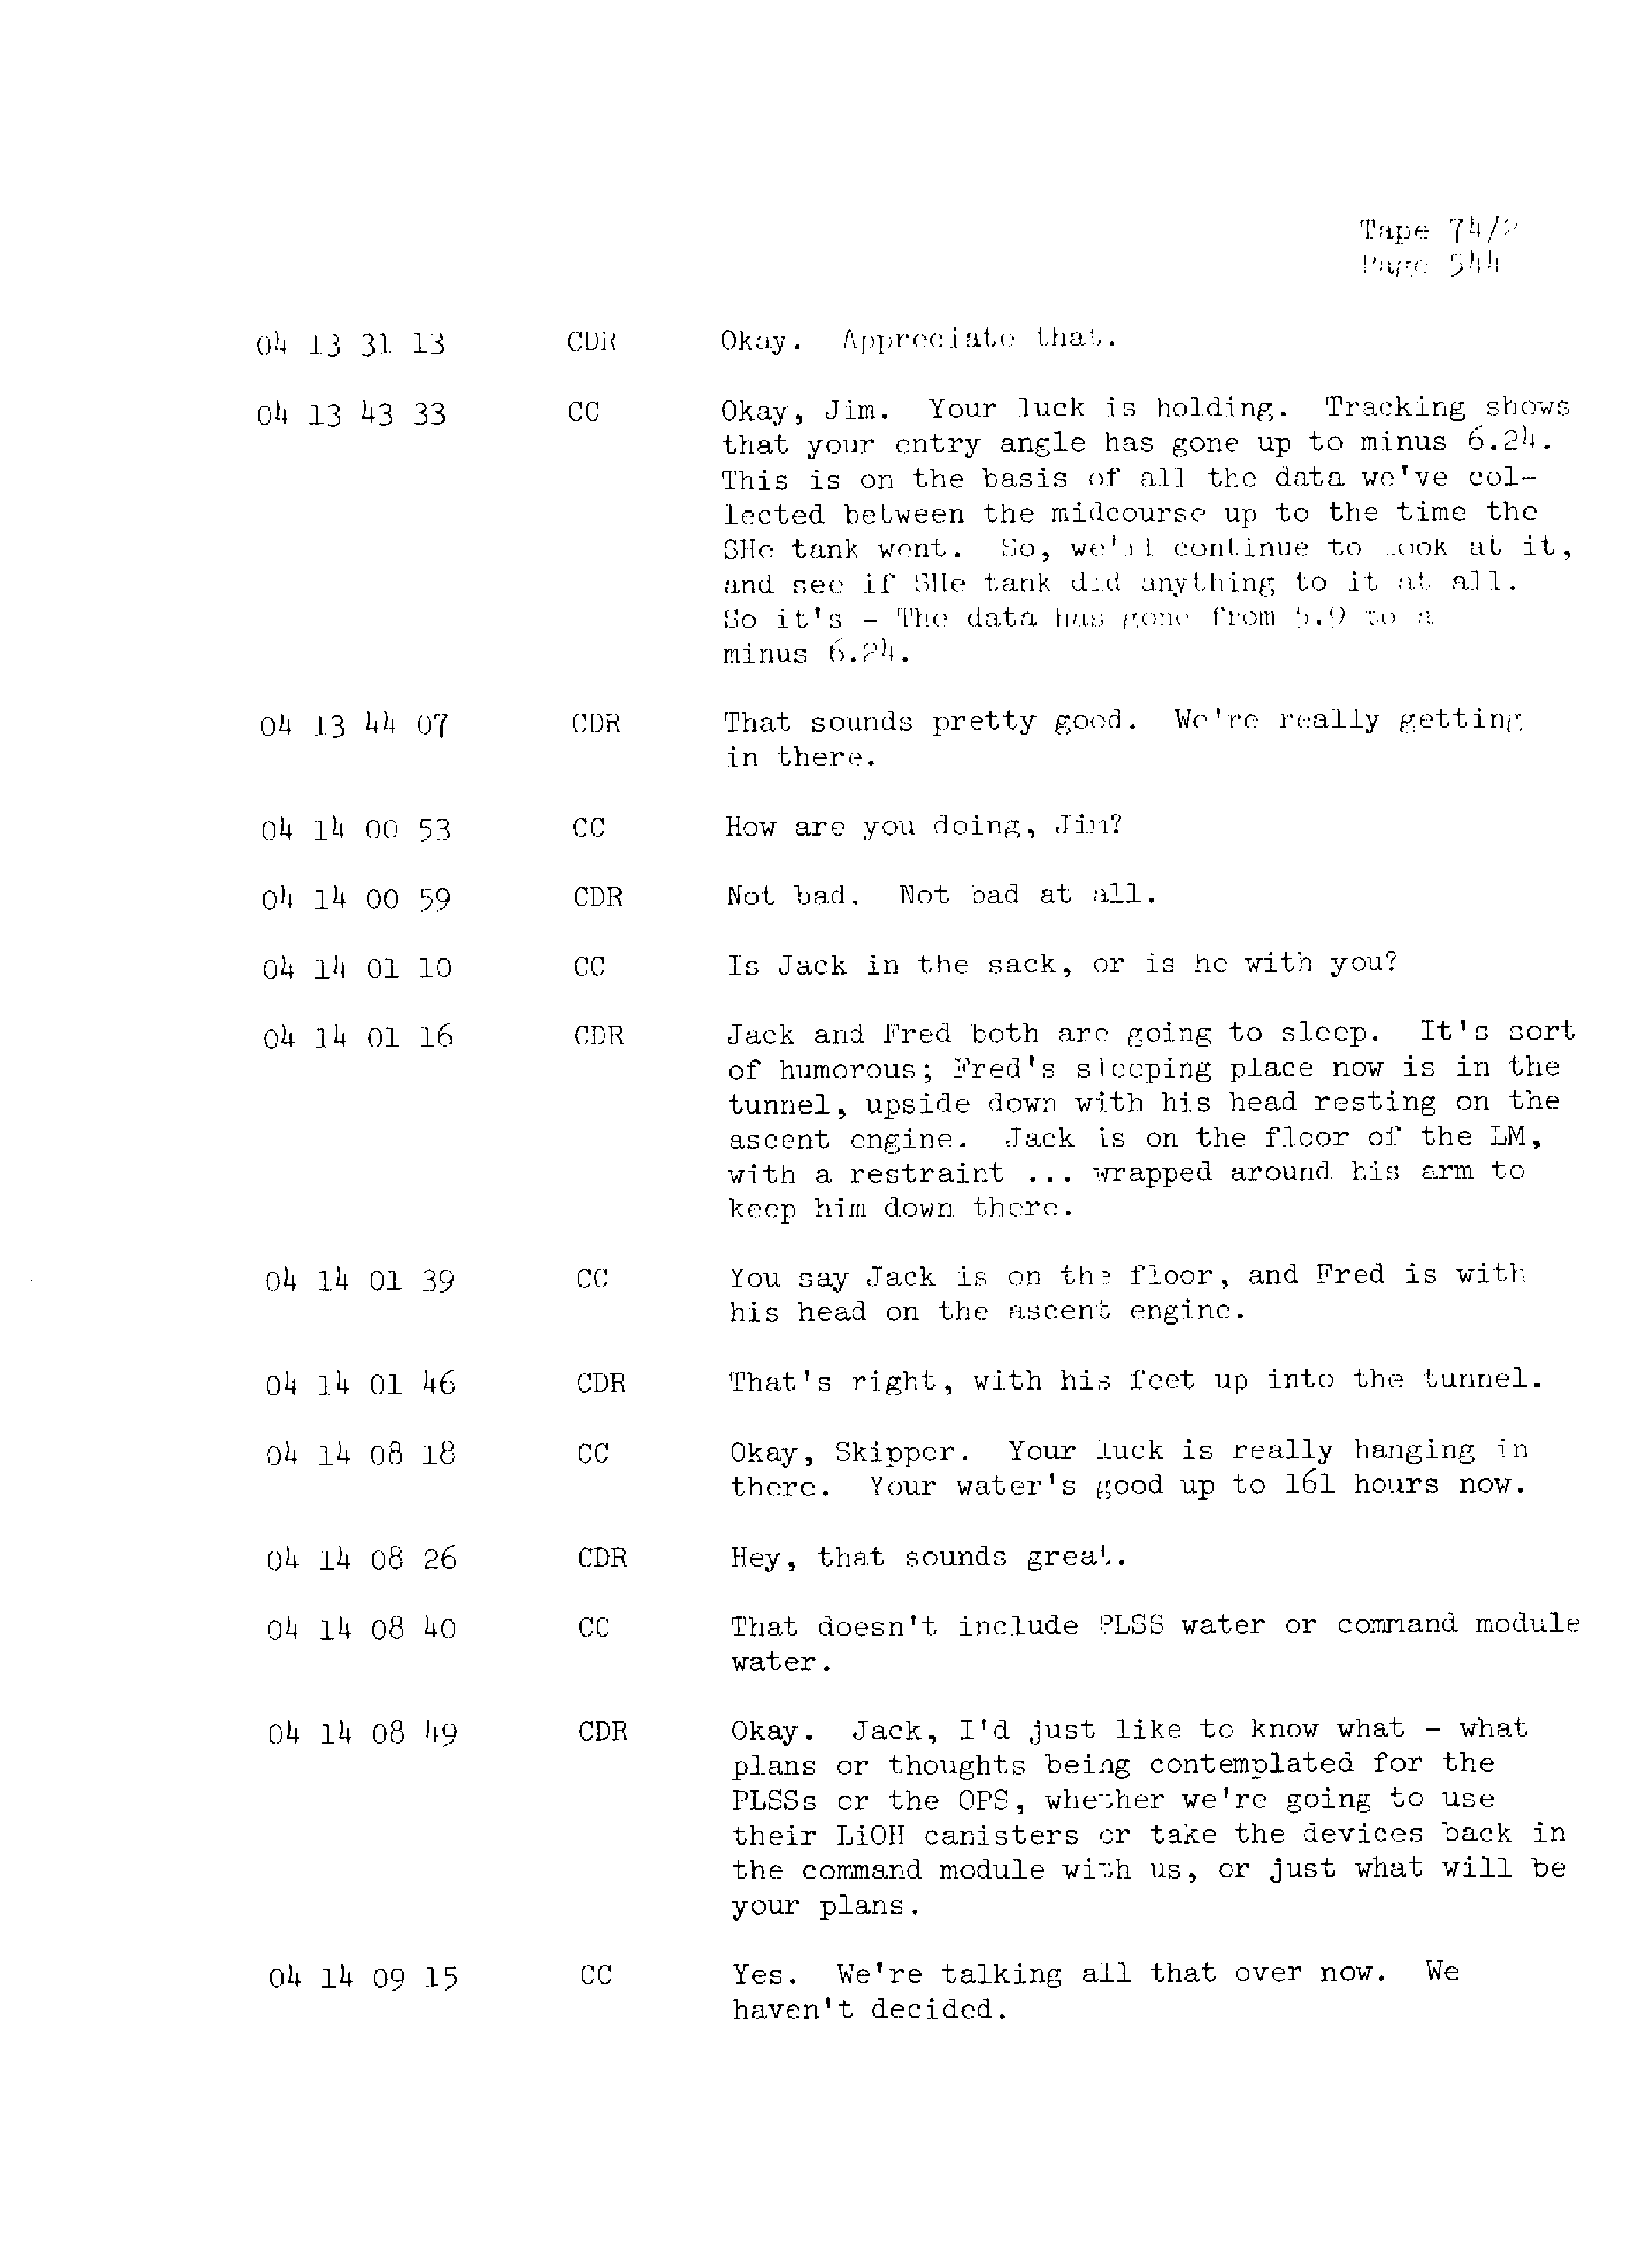 Page 551 of Apollo 13’s original transcript